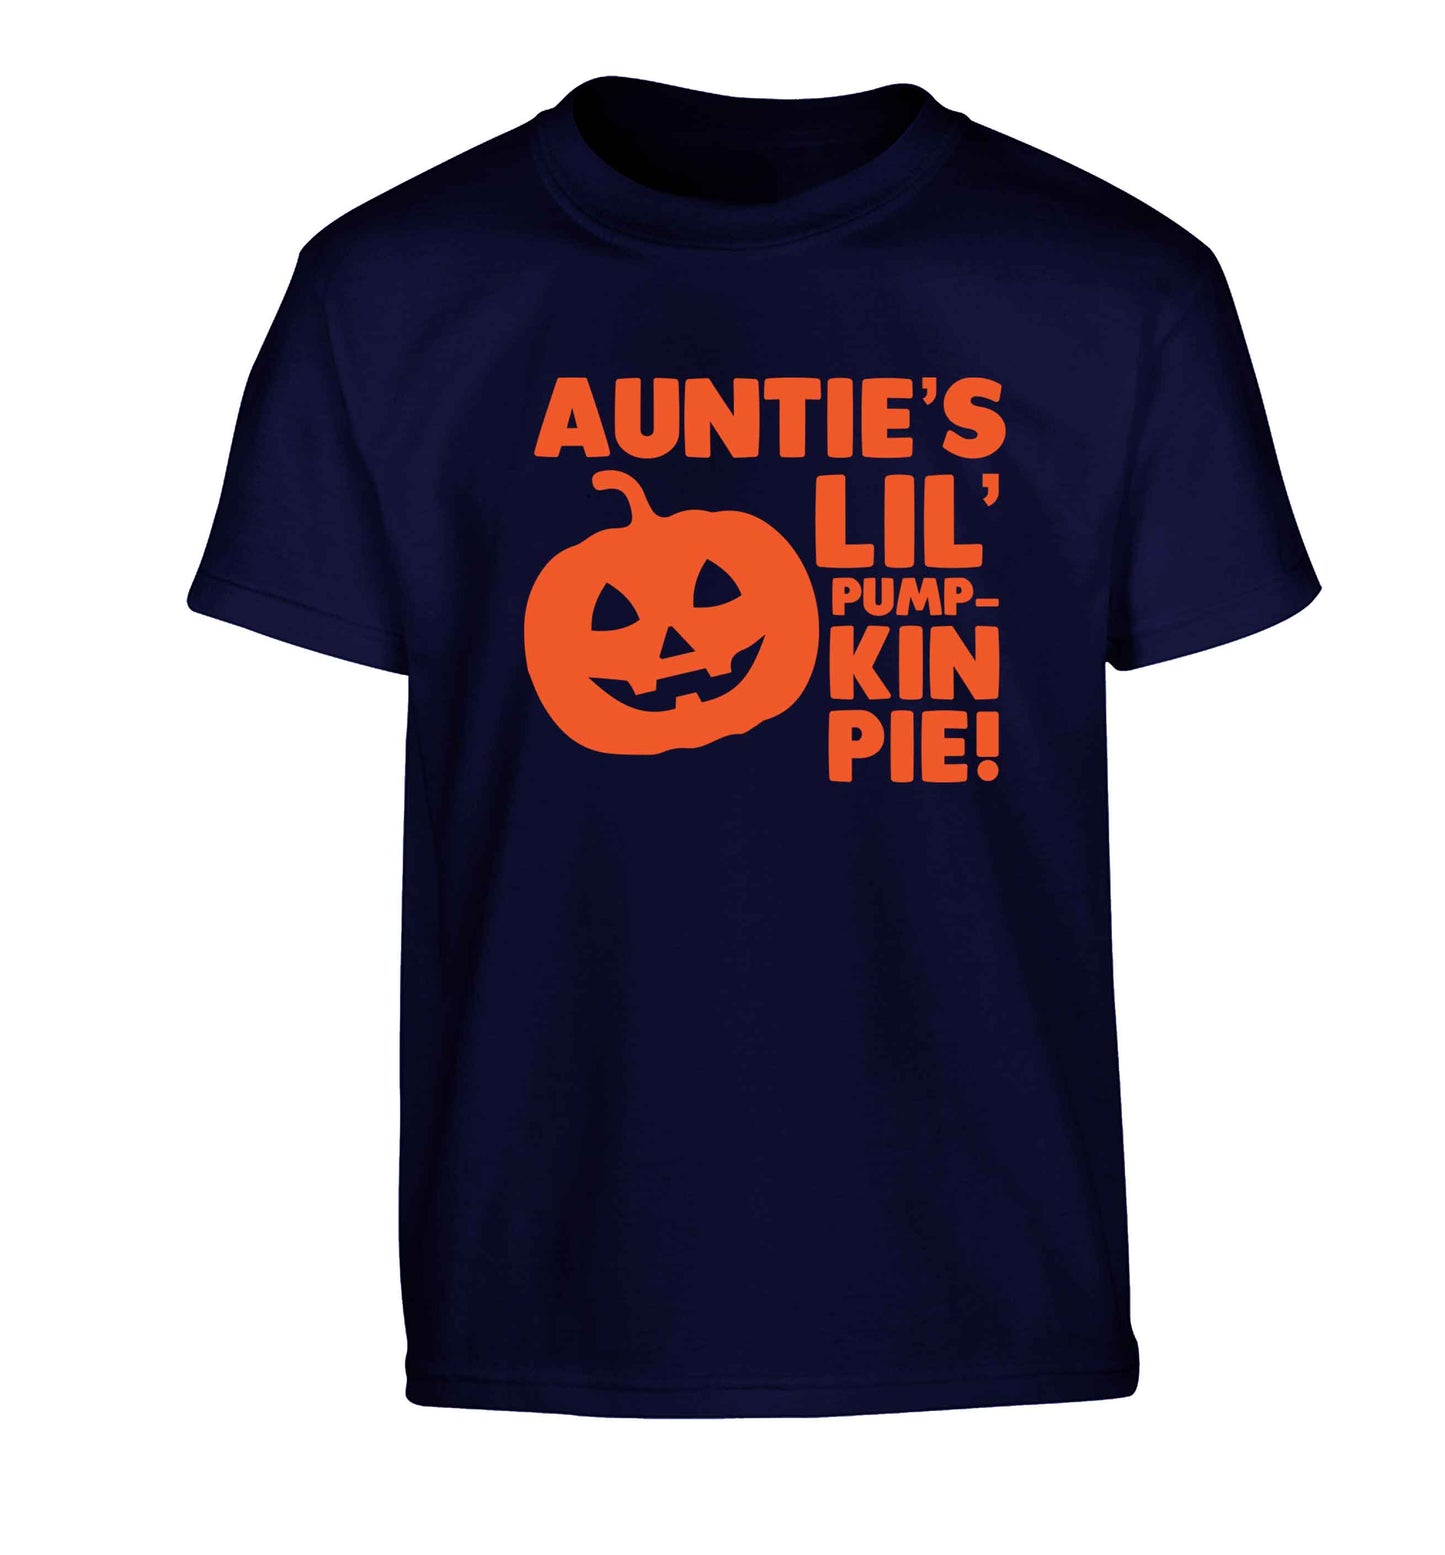 Auntie's lil' pumpkin pie Children's navy Tshirt 12-13 Years